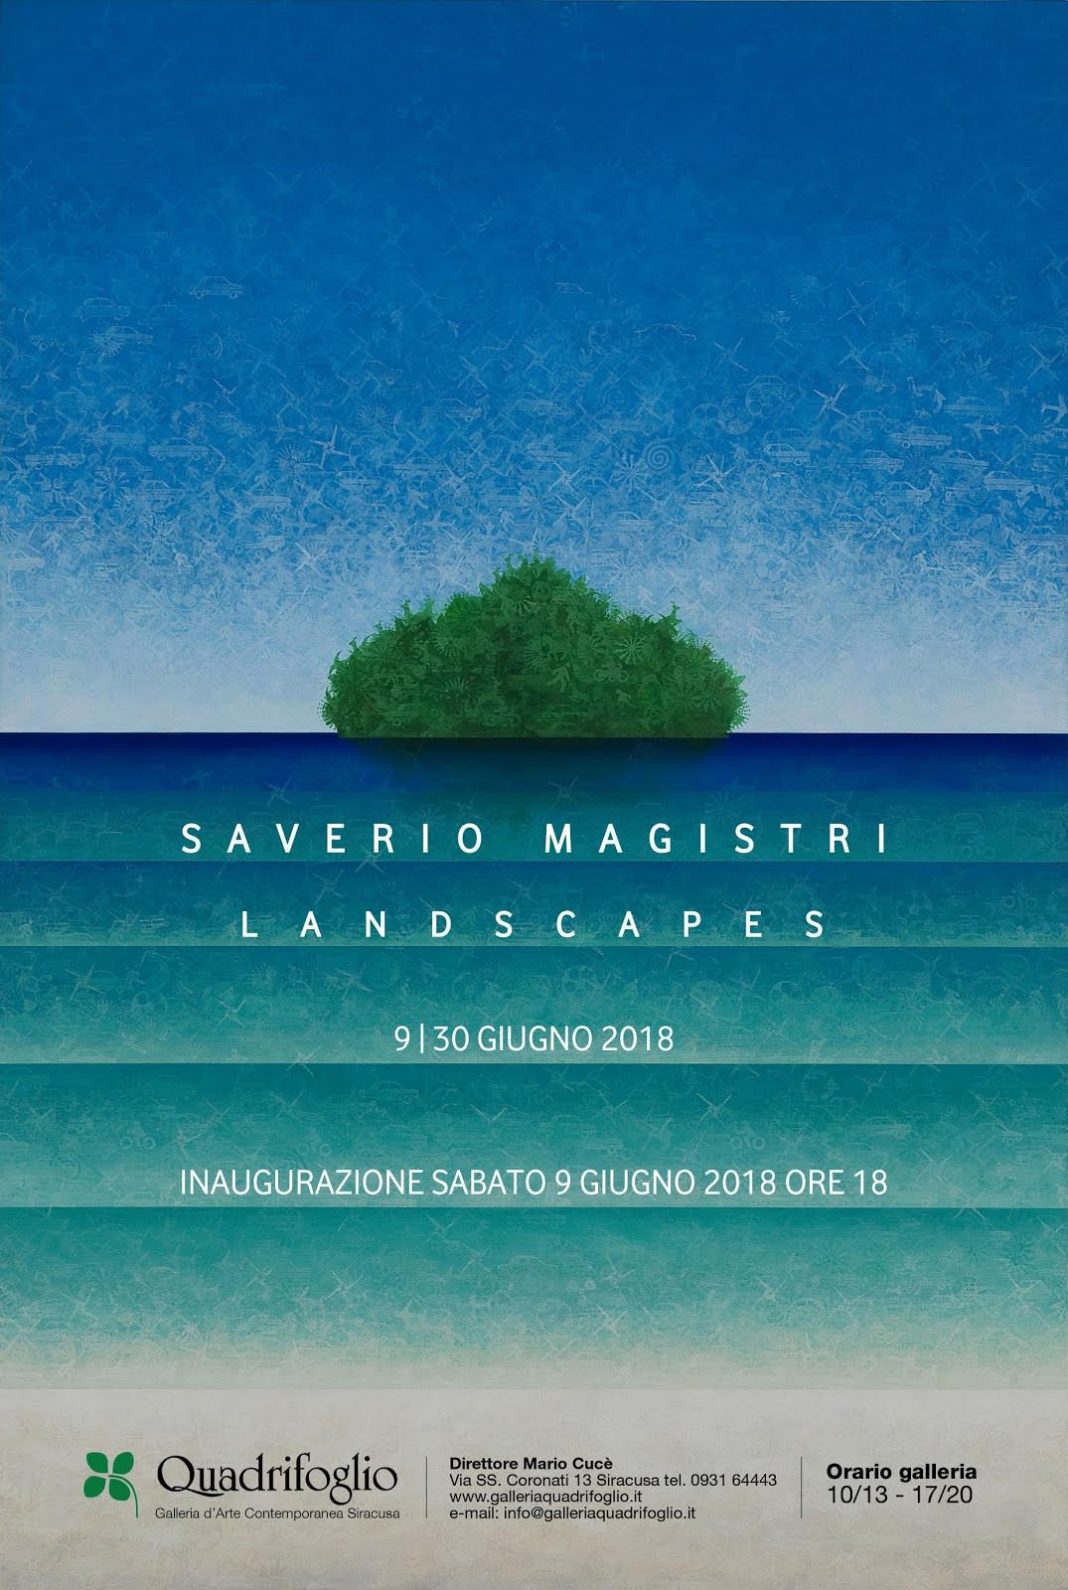 Saverio Magistri – Landscapeshttps://www.exibart.com/repository/media/eventi/2018/05/saverio-magistri-8211-landscapes-1068x1590.jpg